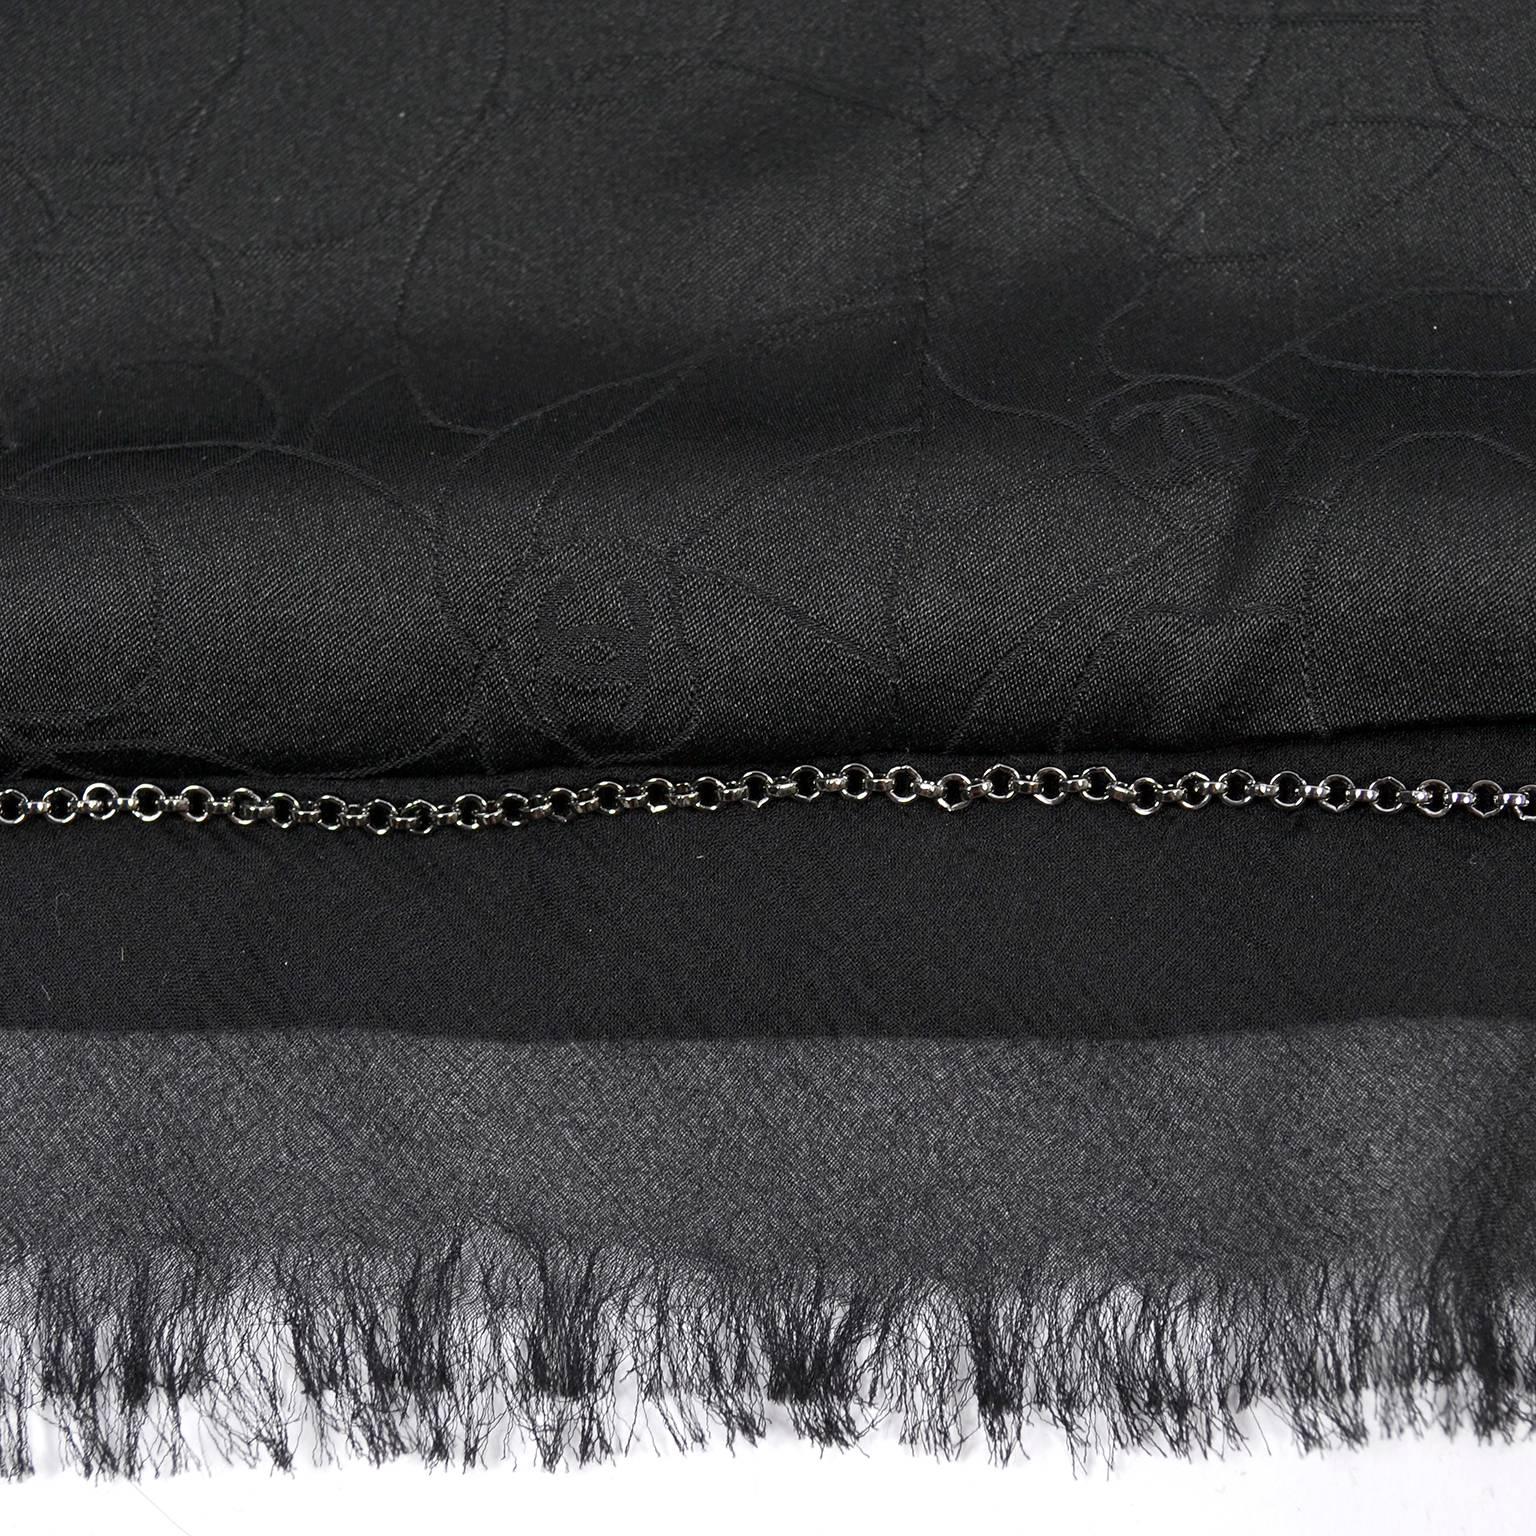 2004 Black Silk & Wool Chanel Jacket Ruching W Frayed Edges New w/ Tag 04 Sz 38 8